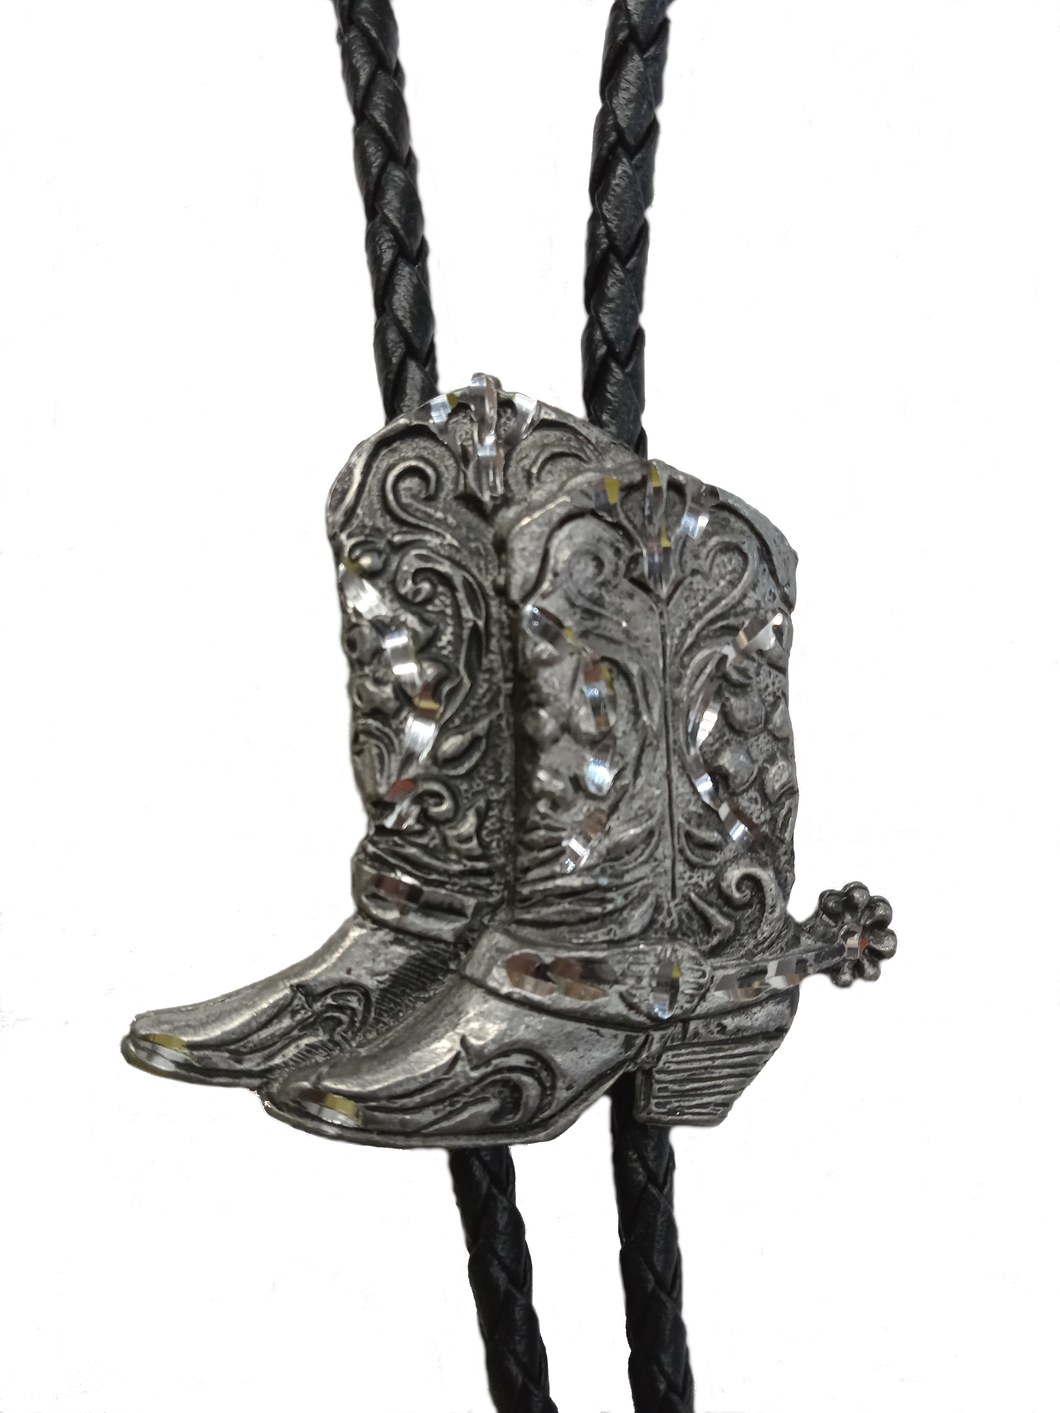 Cowboy Boots Bolo Tie - 1140